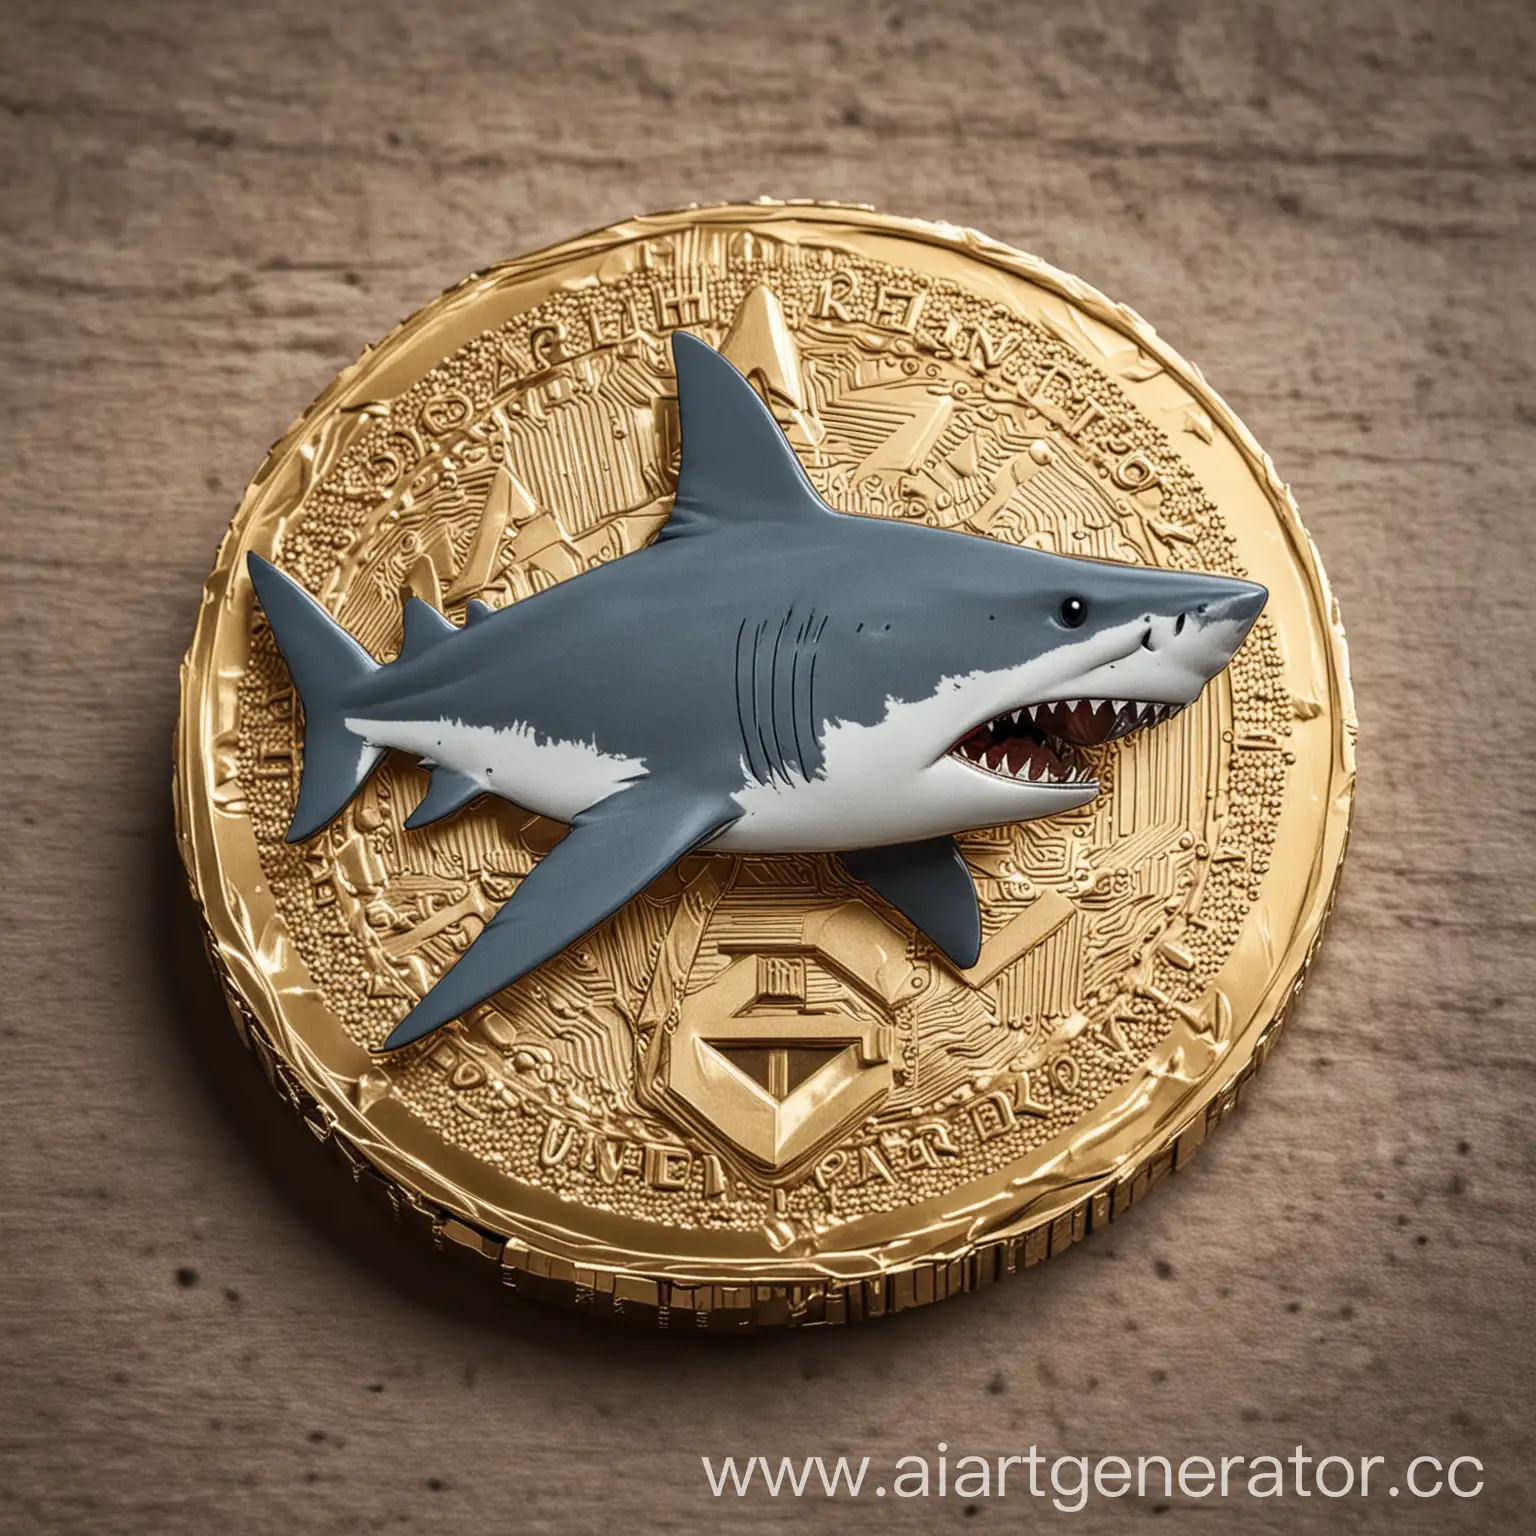 A crypto coin with a shark on it